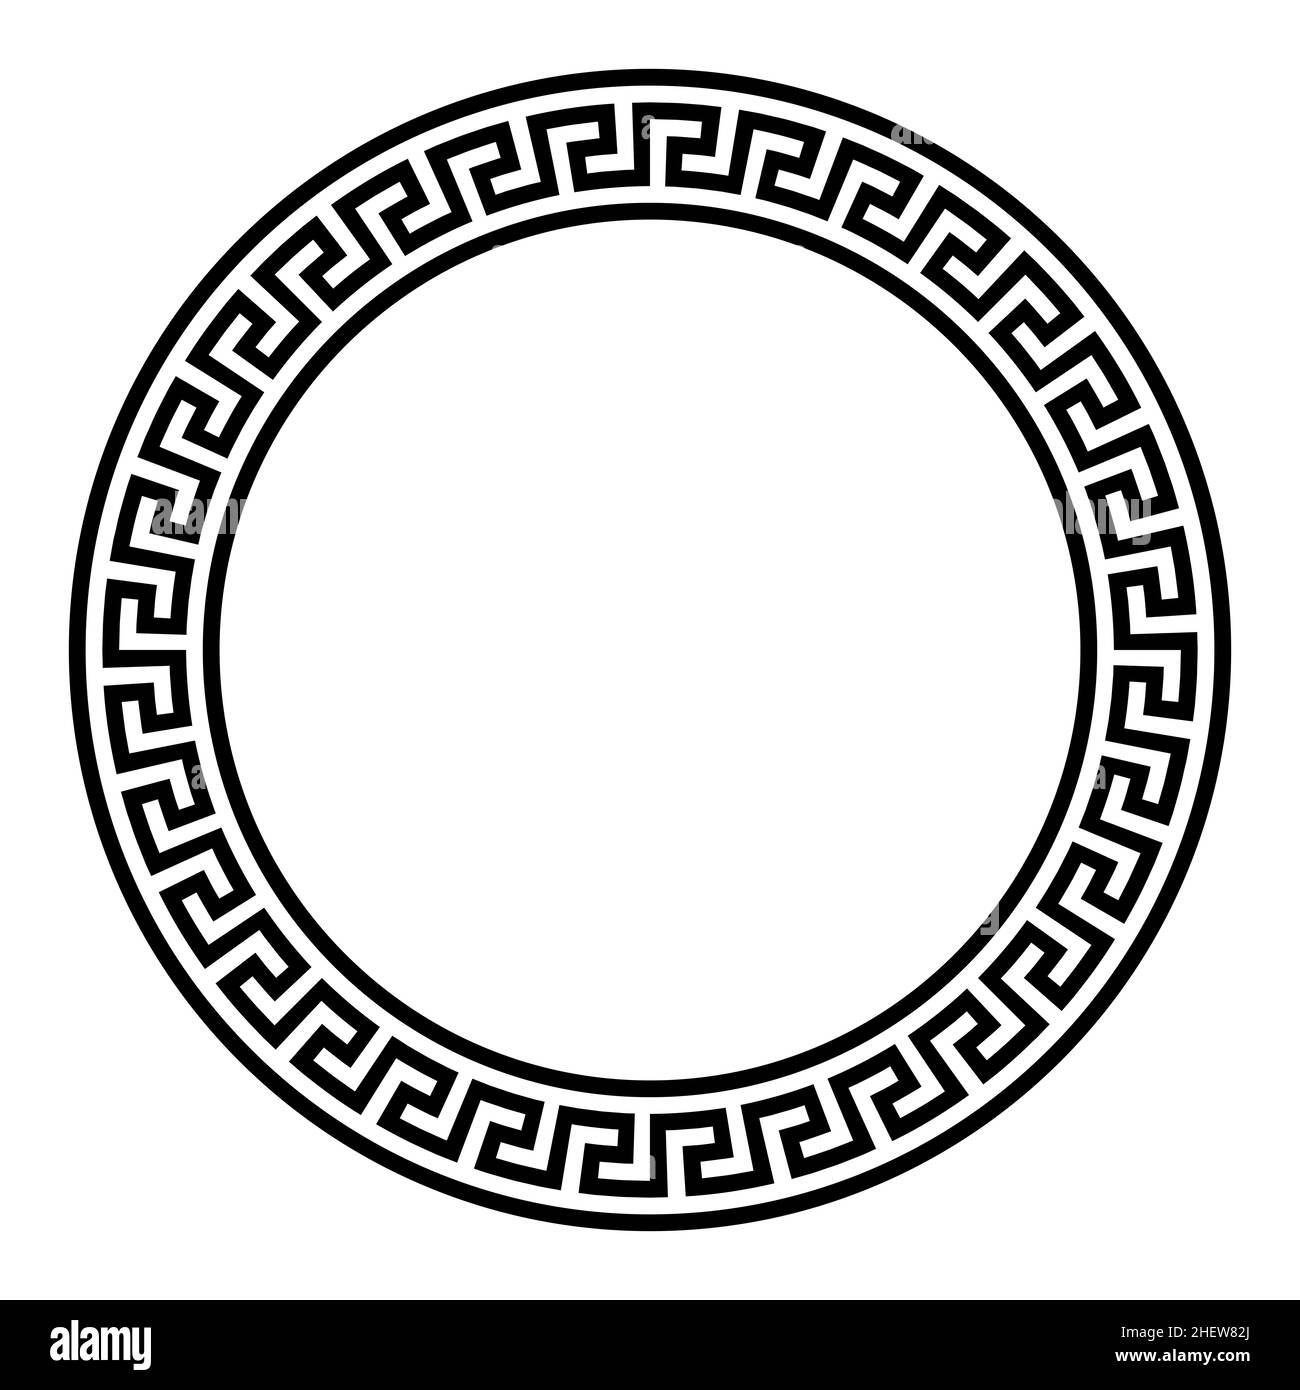 Motif méandre simple, cadre circulaire.Bordure ronde décorative, composée de lignes, en forme de motif répété. Banque D'Images